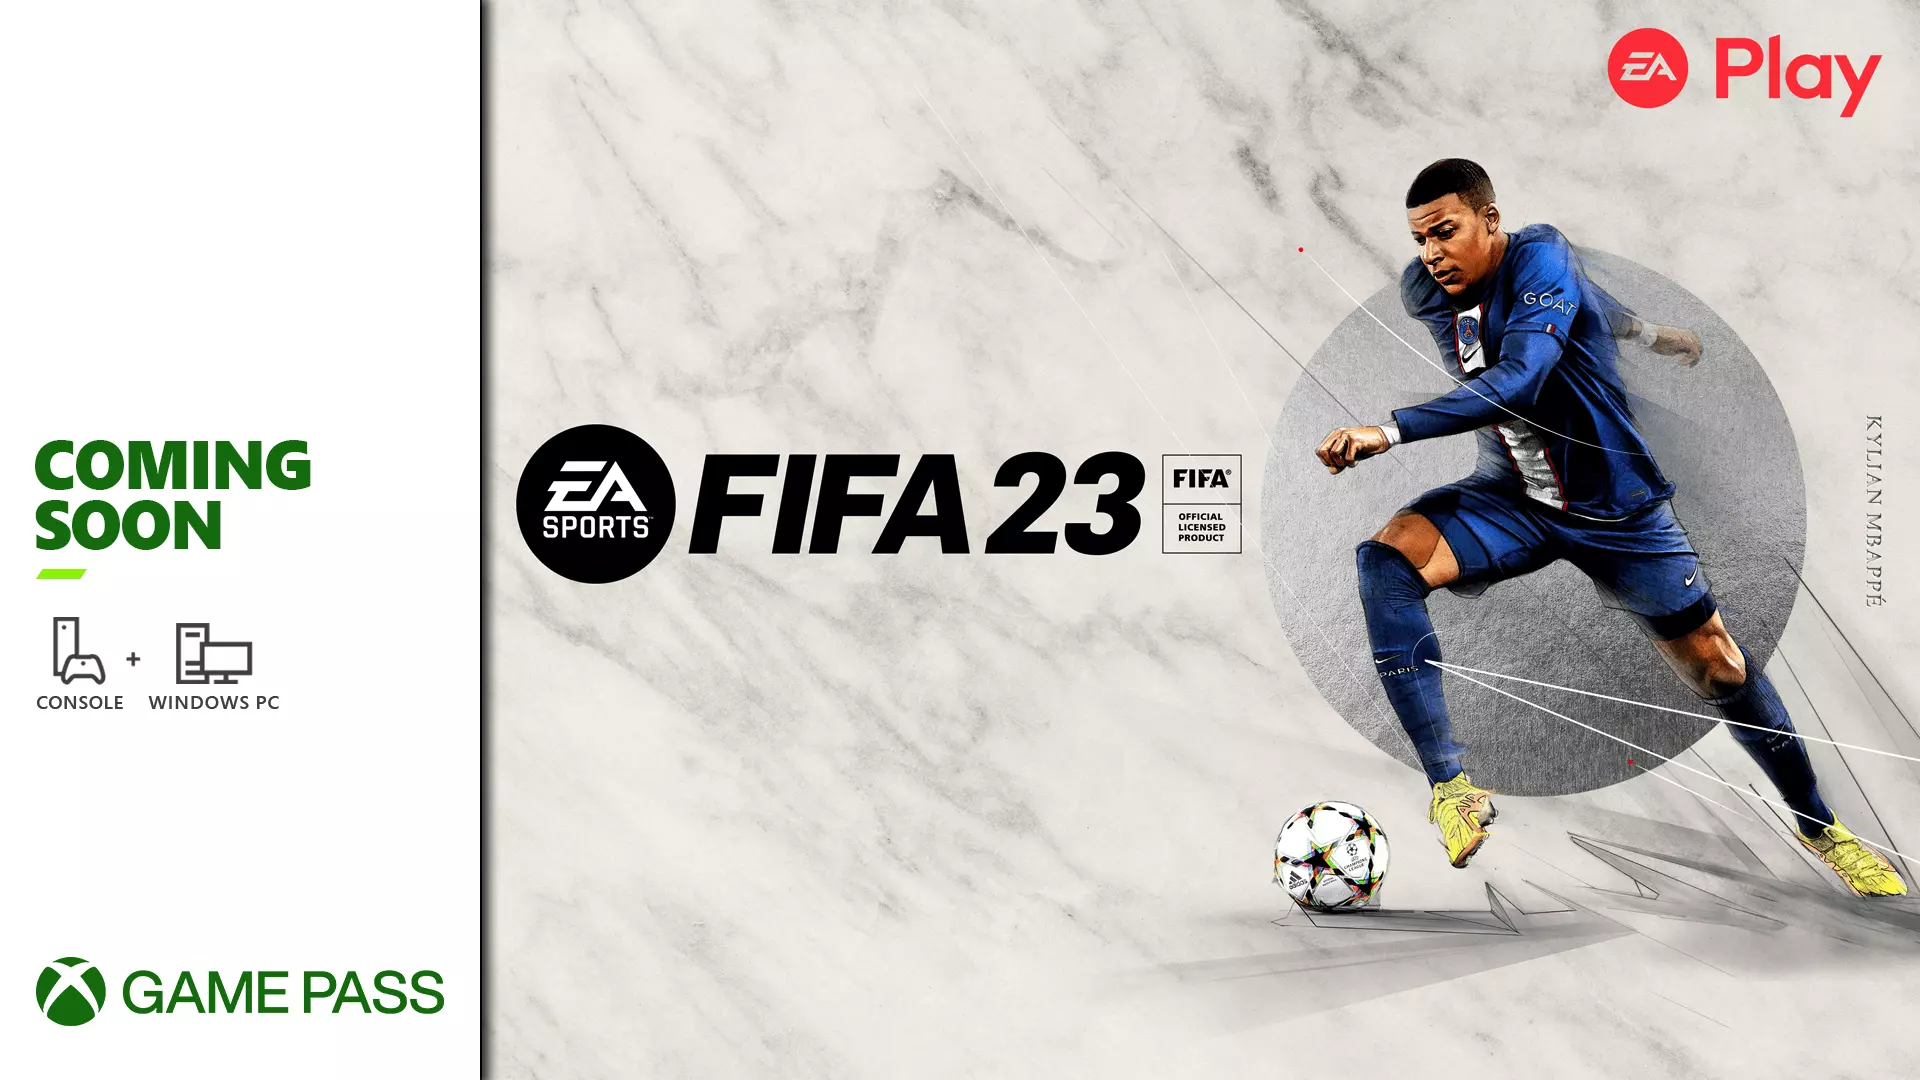 FIFA 23 arribarà molt aviat a Game Pass